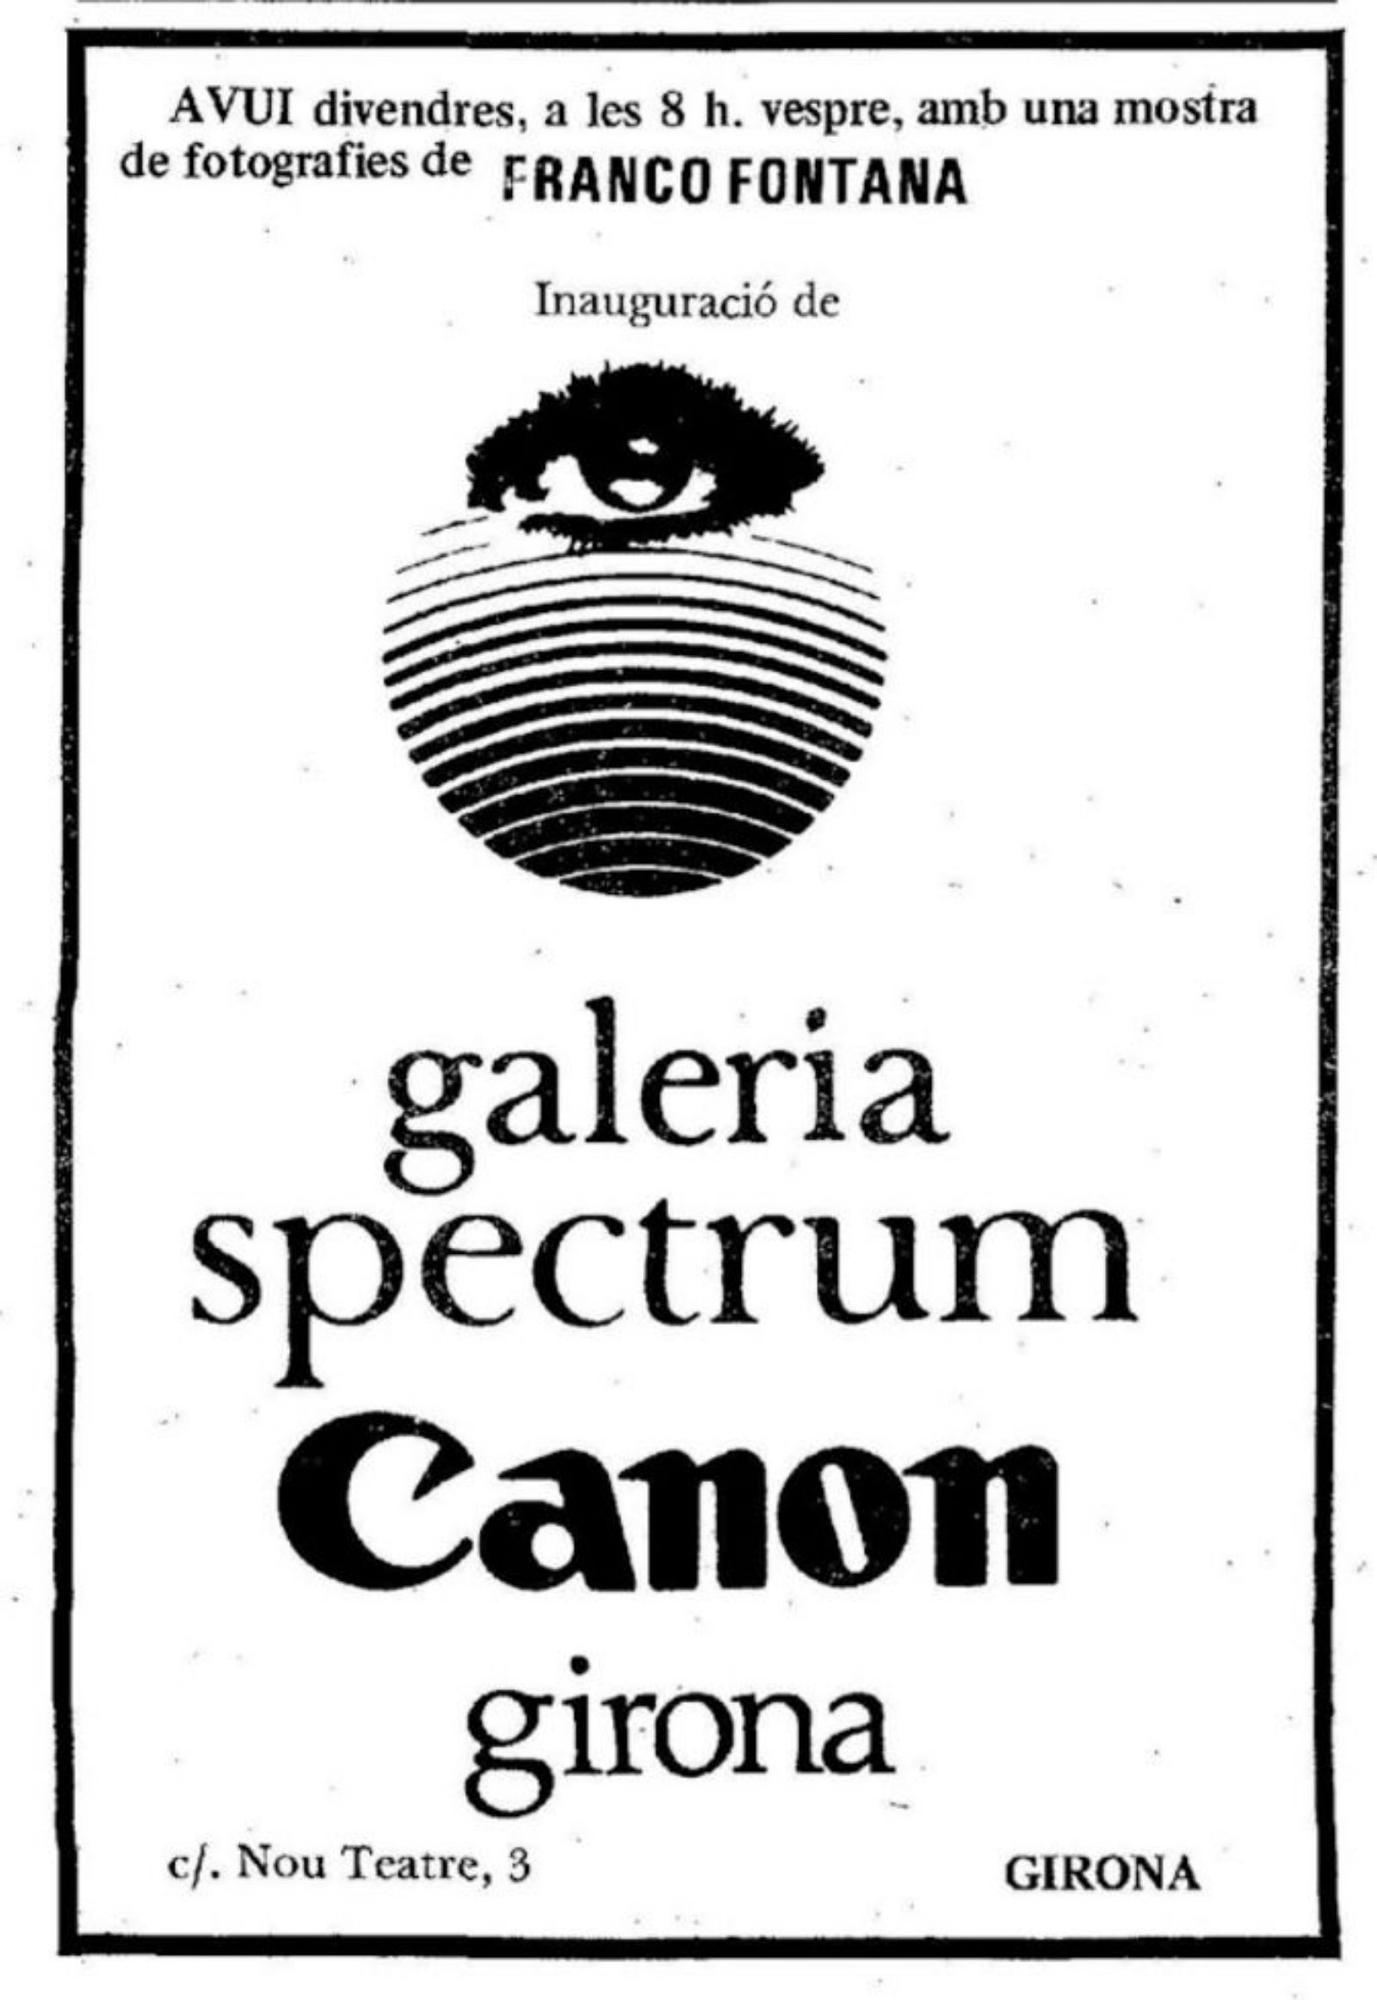 Cartell anunciador de la inauguració de la galeria i de la seva primera exposició, amb obres de Franco Fontana, l’octubre del 1980. |  